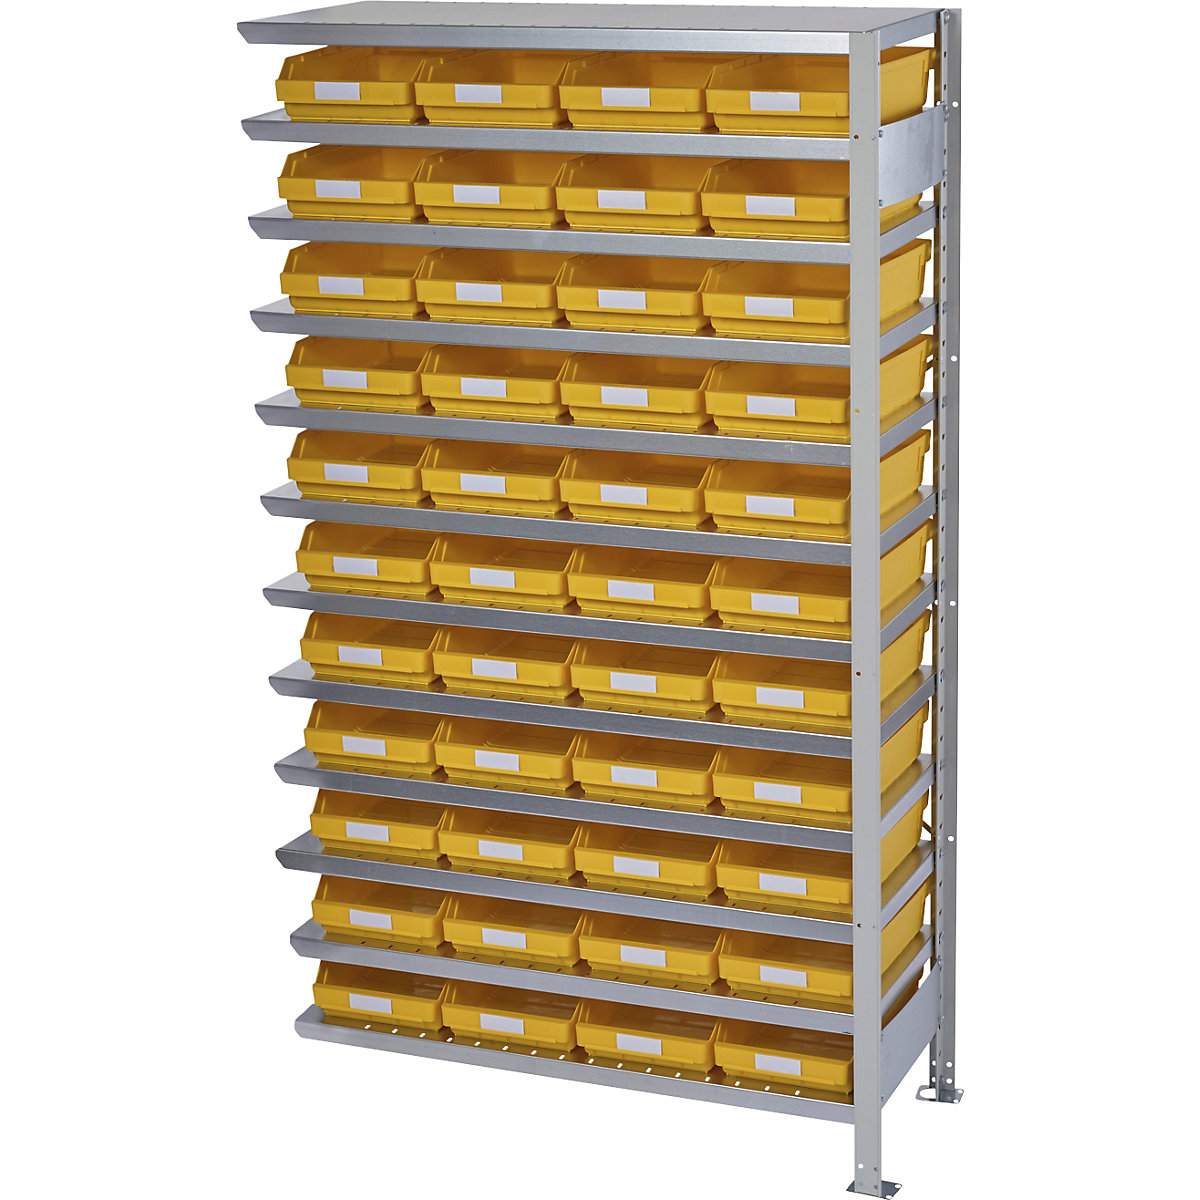 Összedugaszolós állvány dobozokkal – STEMO, állványmagasság 1790 mm, bővítő állvány, 500 mm mély, 44 sárga doboz-14